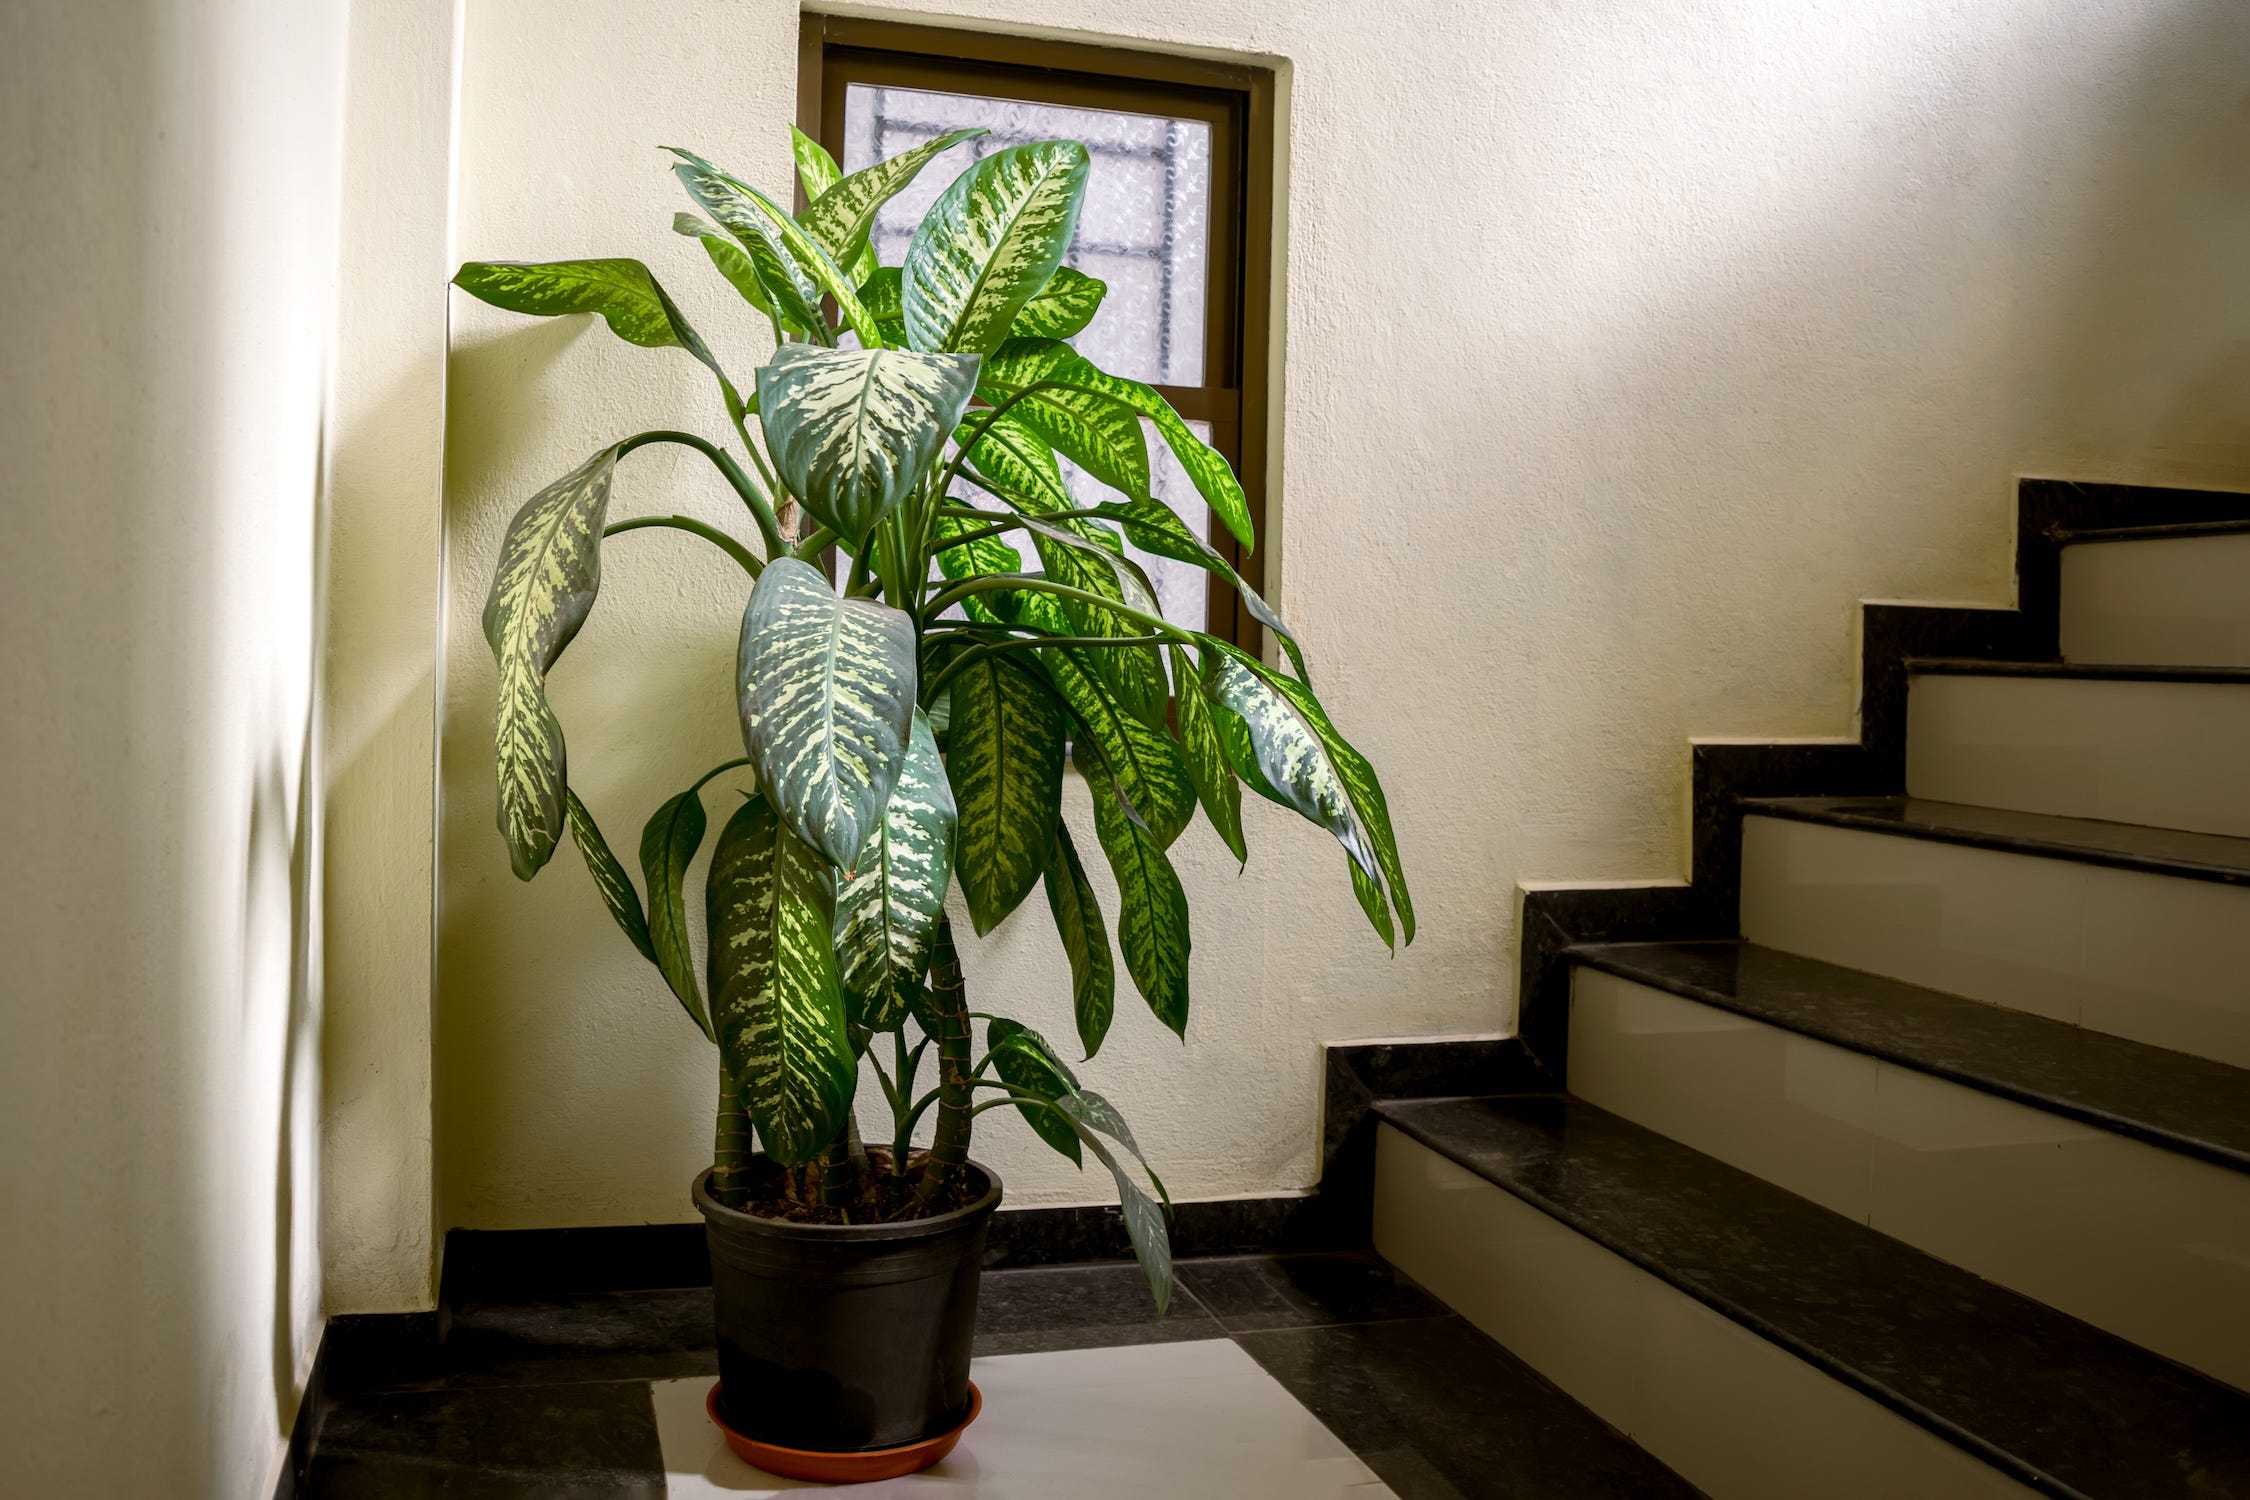 Eine Dieffenbachia-Pflanze im Topf mit grünen und weißen Flecken auf den Blättern am Fuß einer Treppe